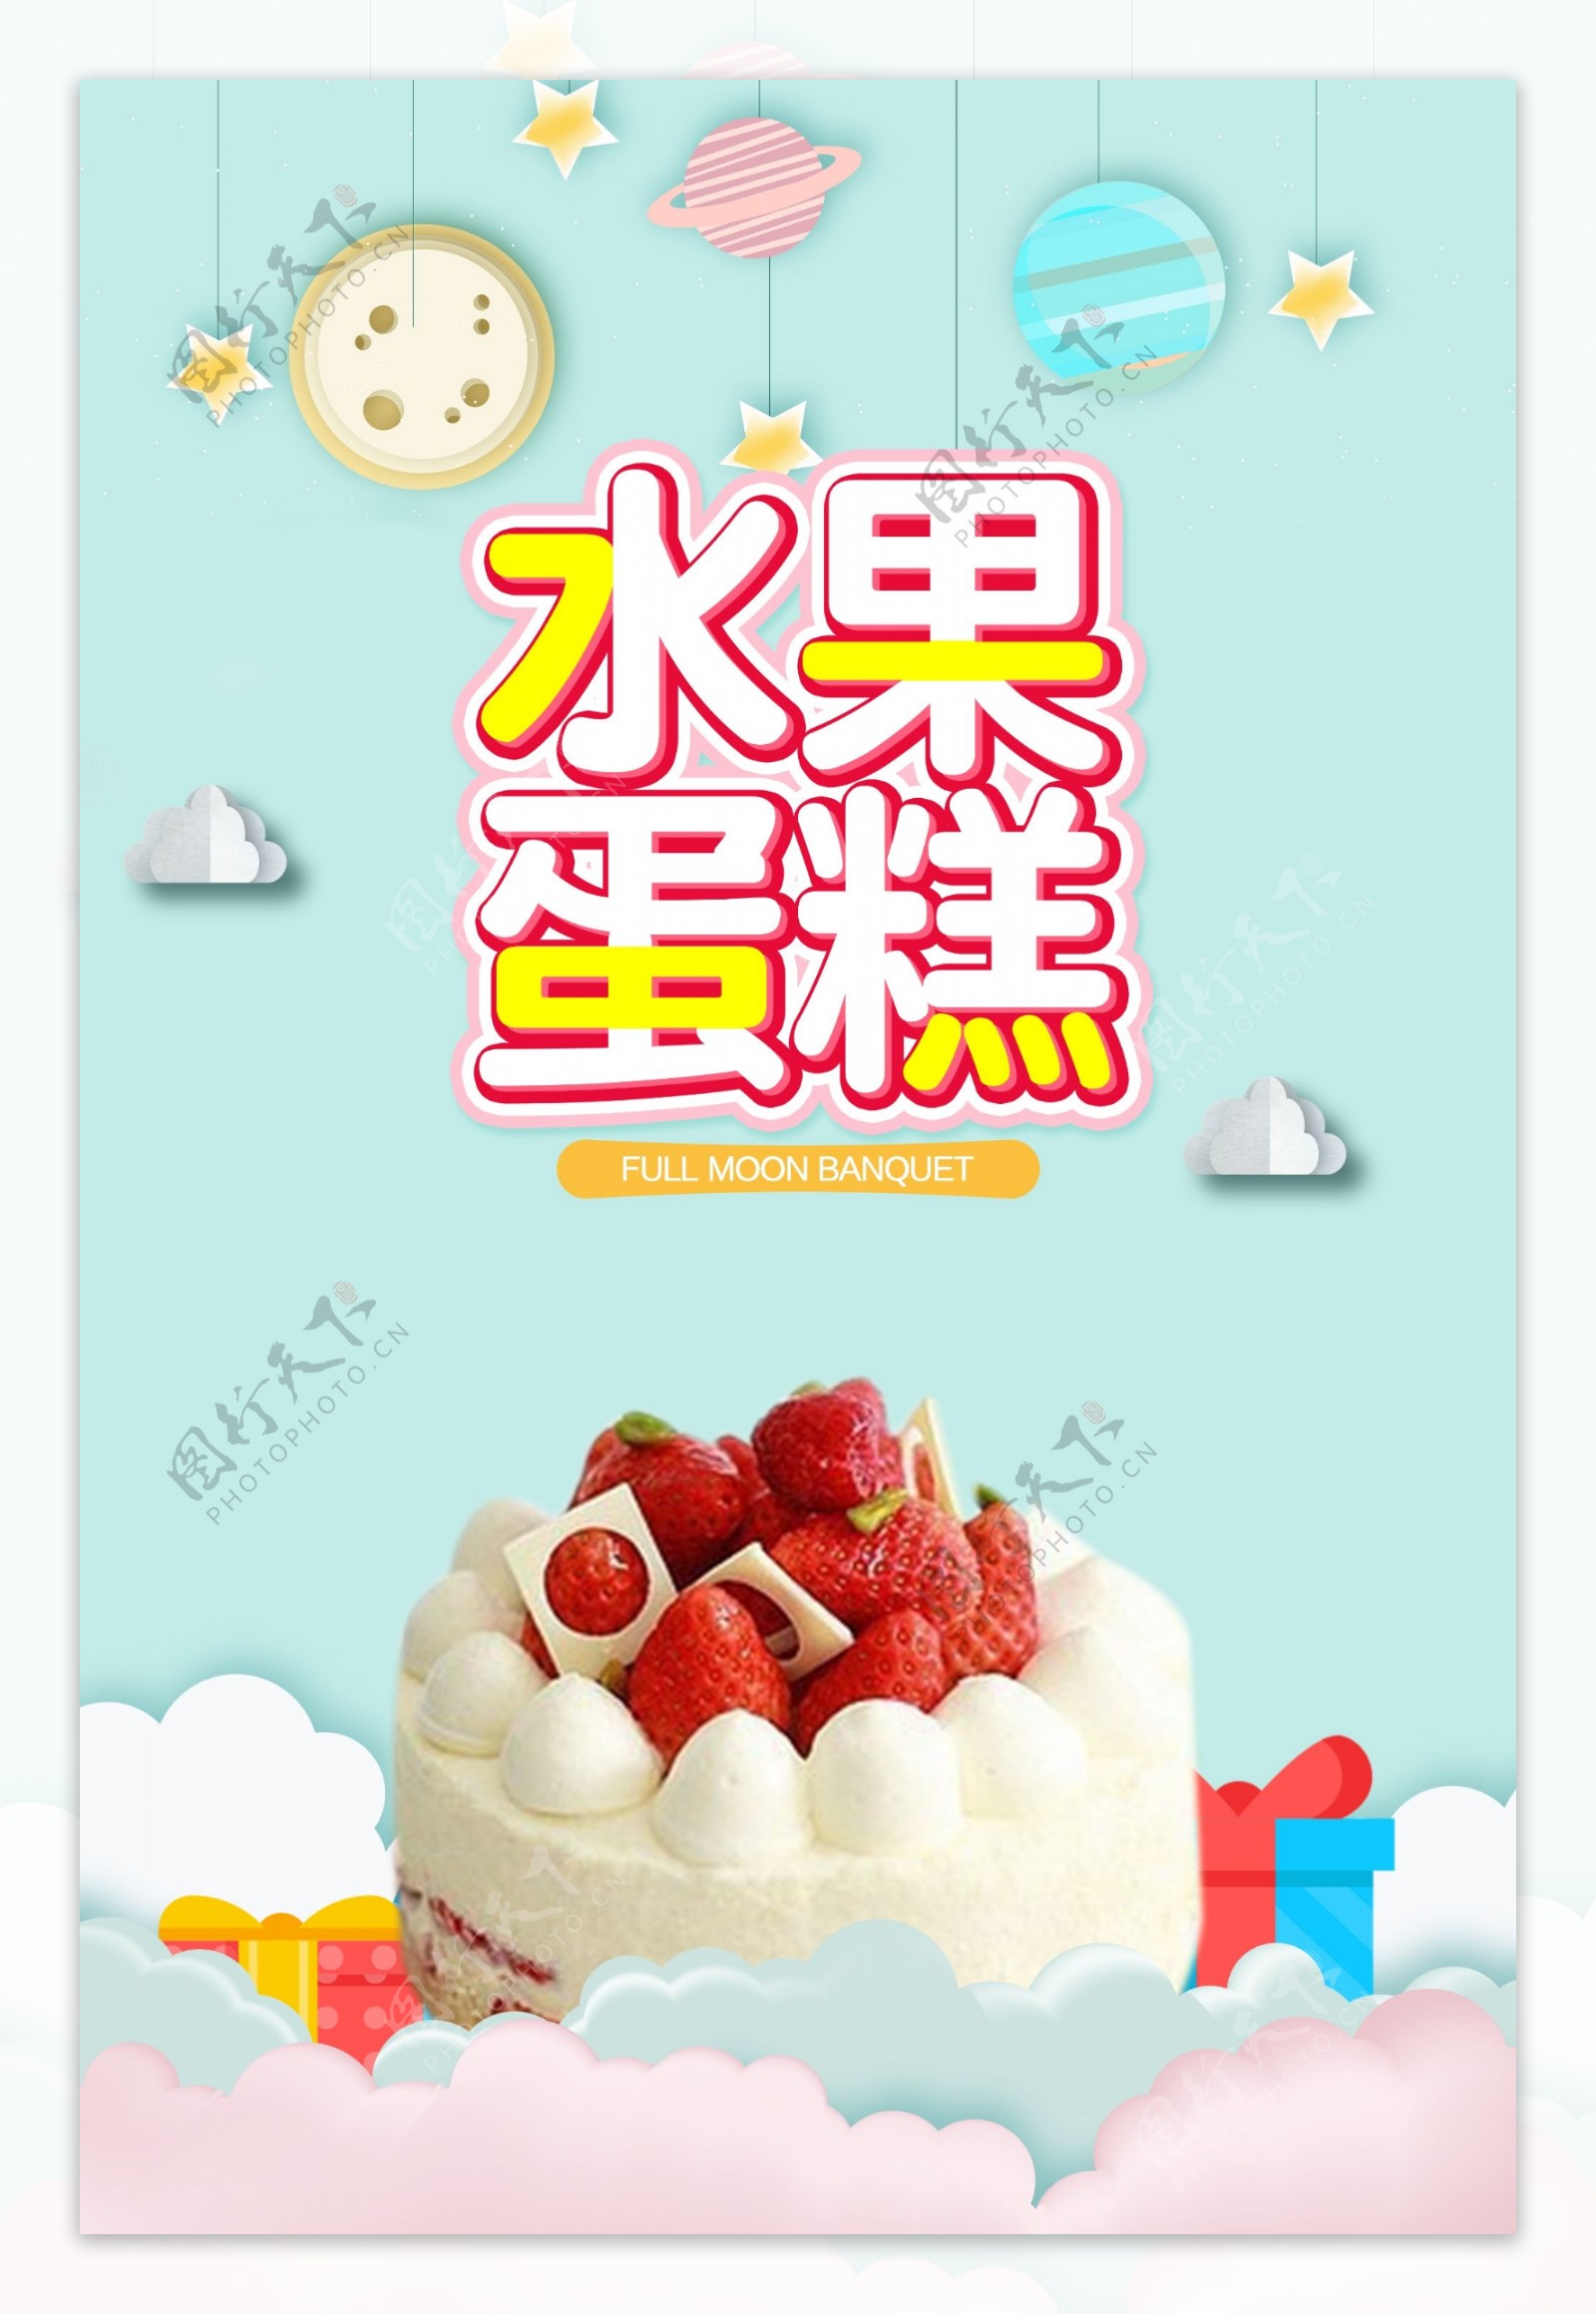 水果蛋糕创意宣传广告海报模板设